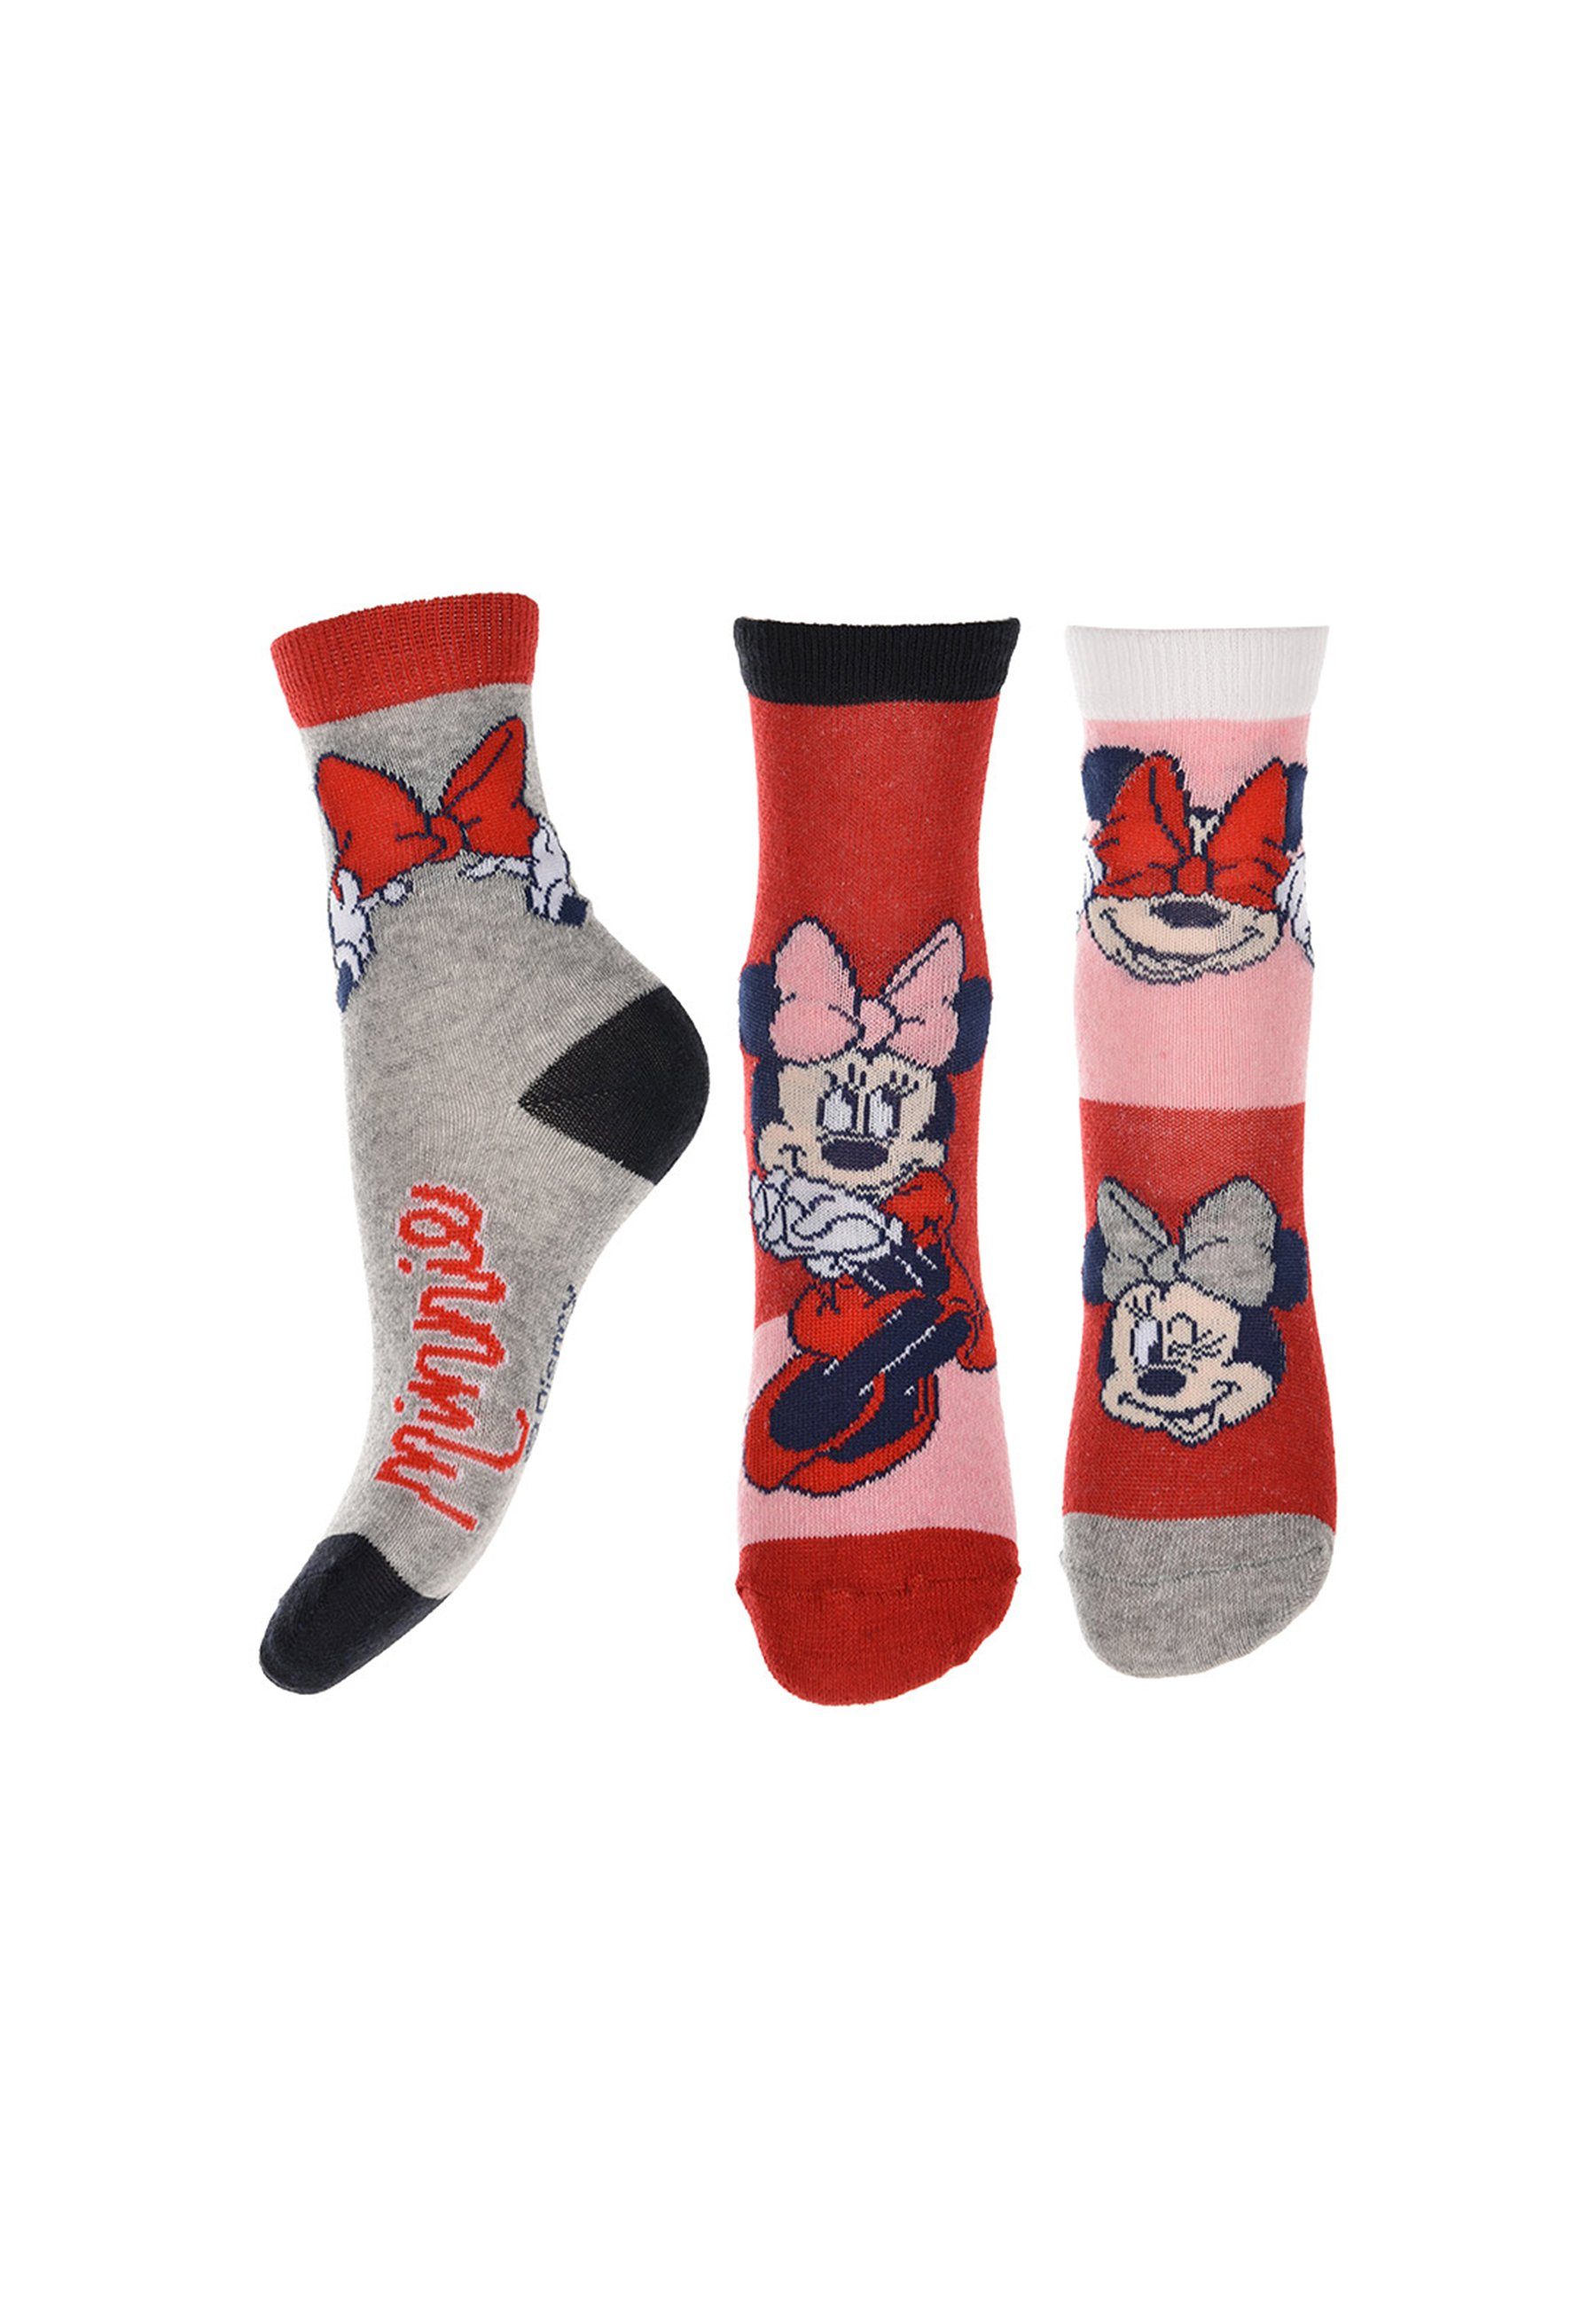 Socken Minnie Mouse Disney Minnie Mädchen Strümpfe Socken Kinder